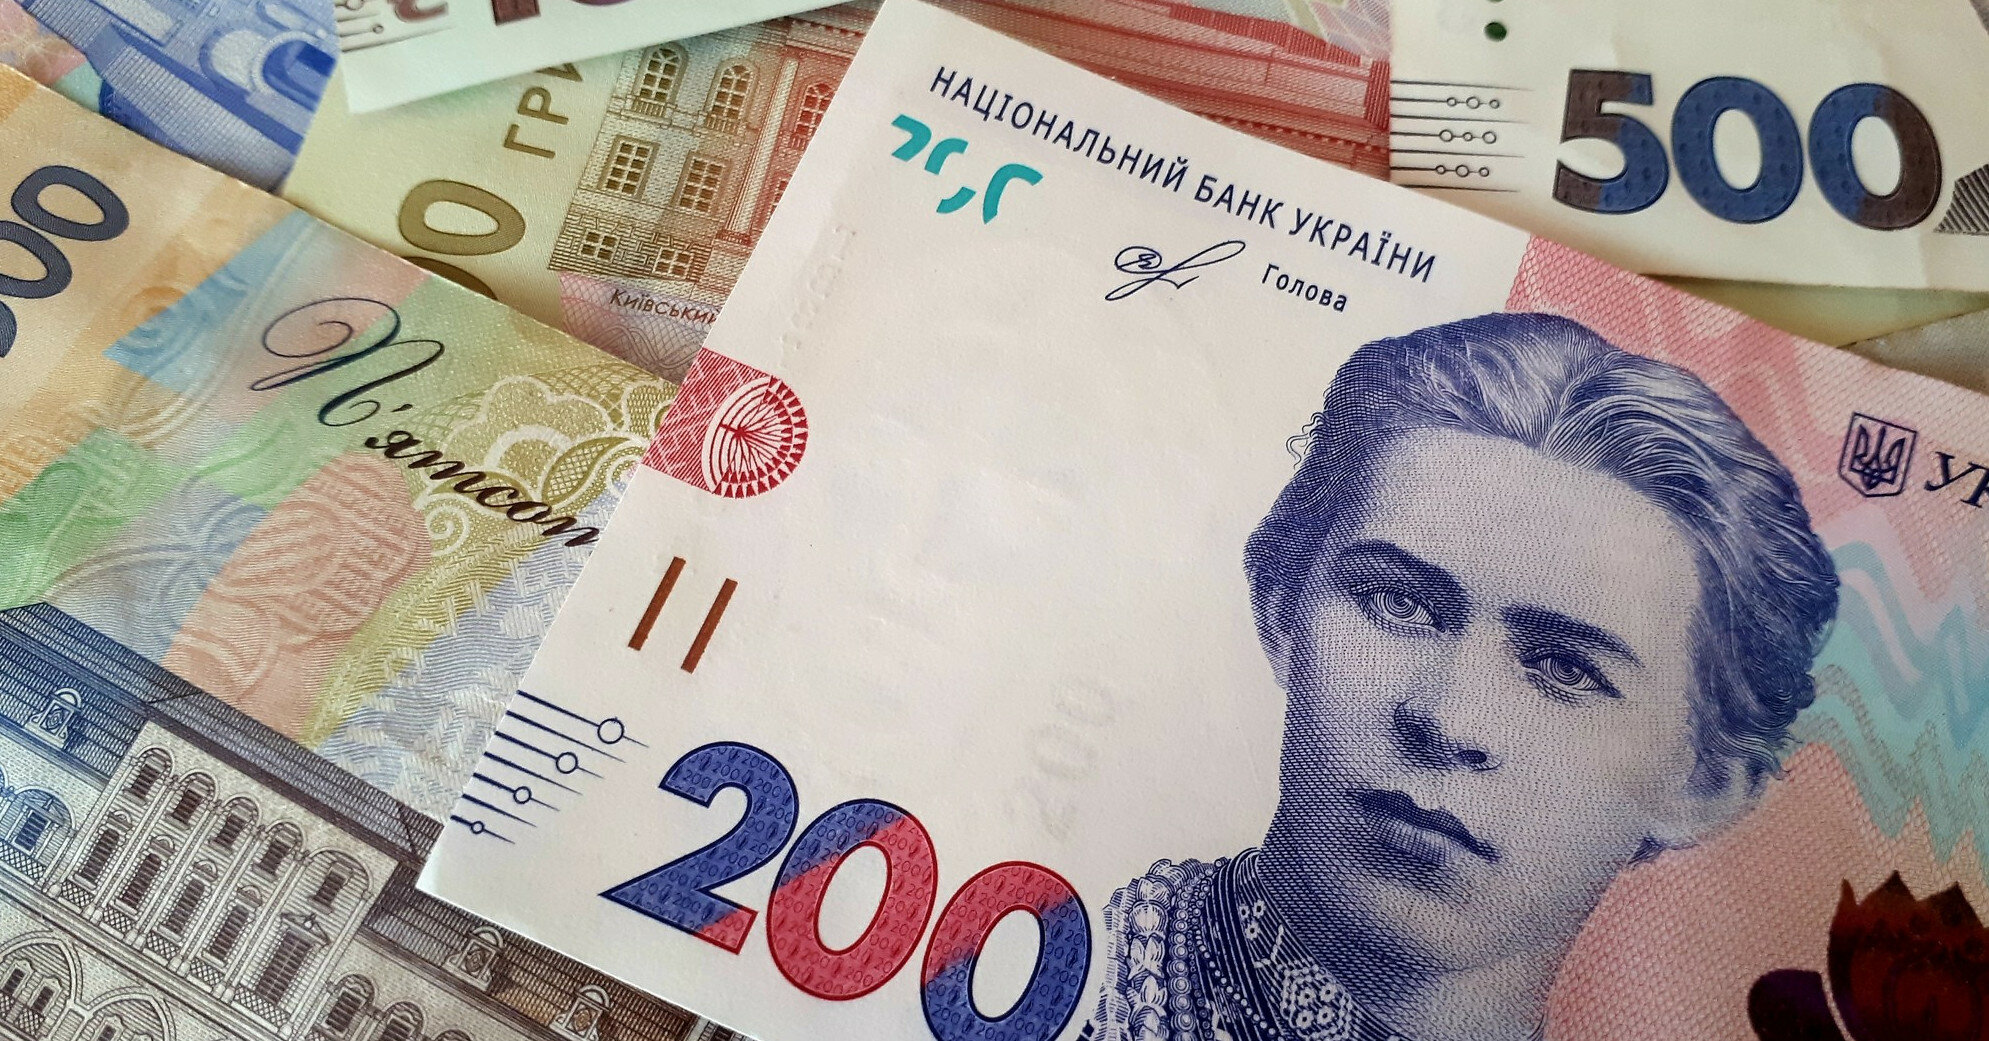 Портфель ОВГЗ украинских банков уменьшился